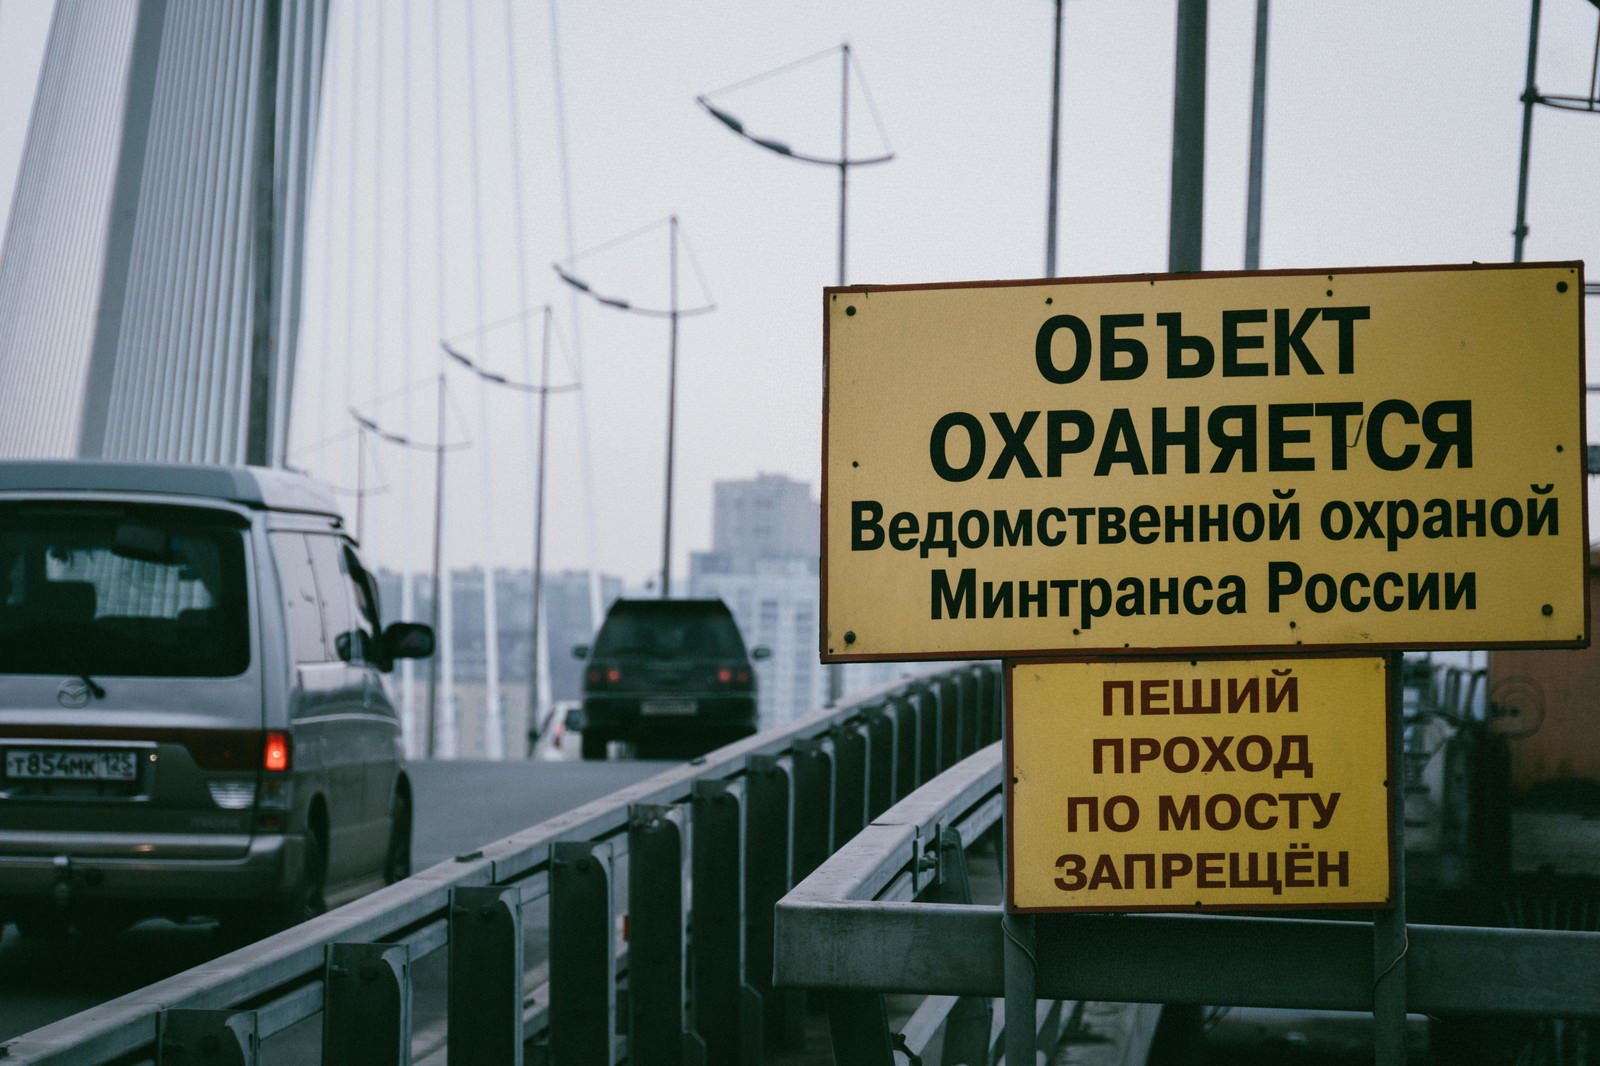 「ウラジオストク黄金橋の入り口の案内板」の写真